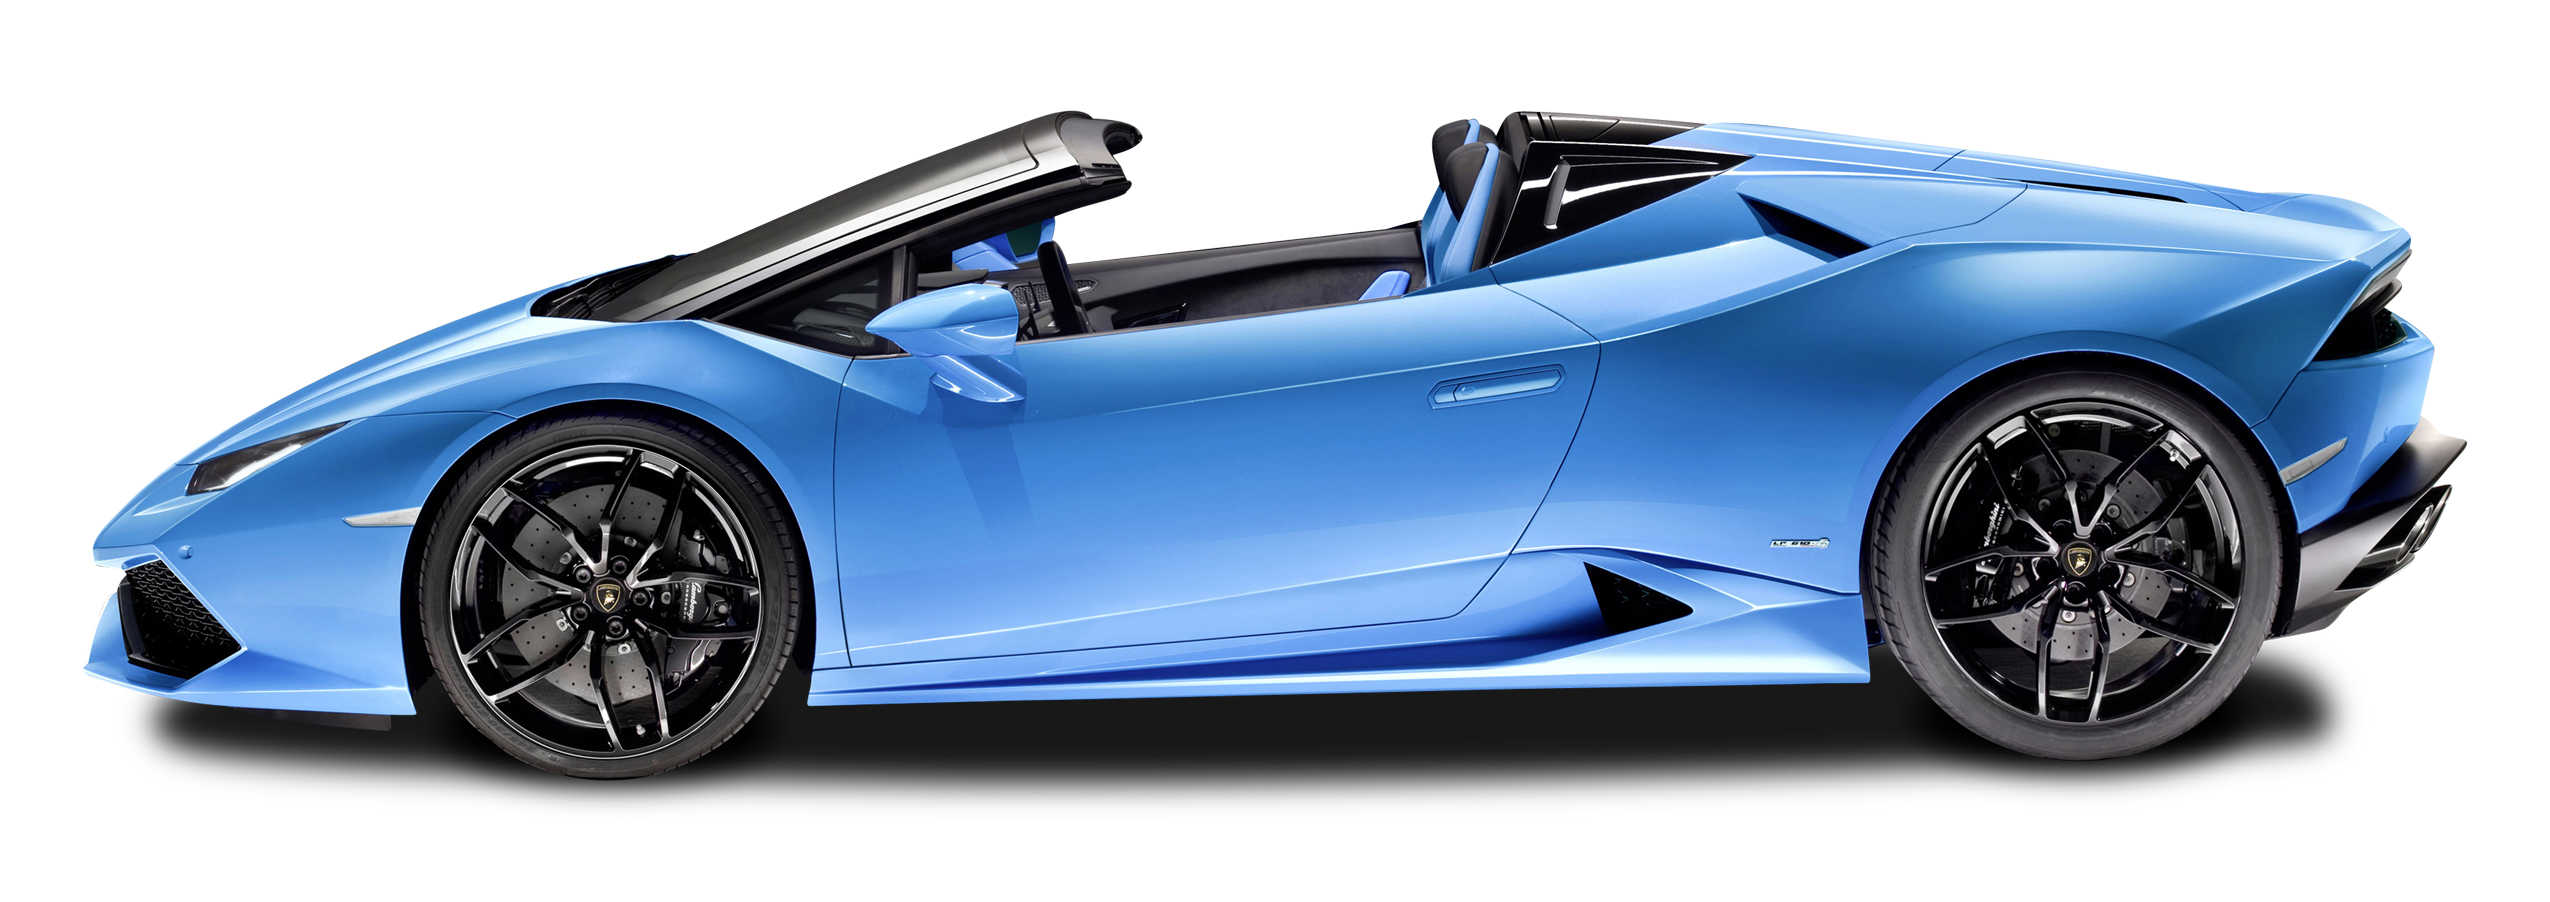 Blue Lamborghini Image Transparente